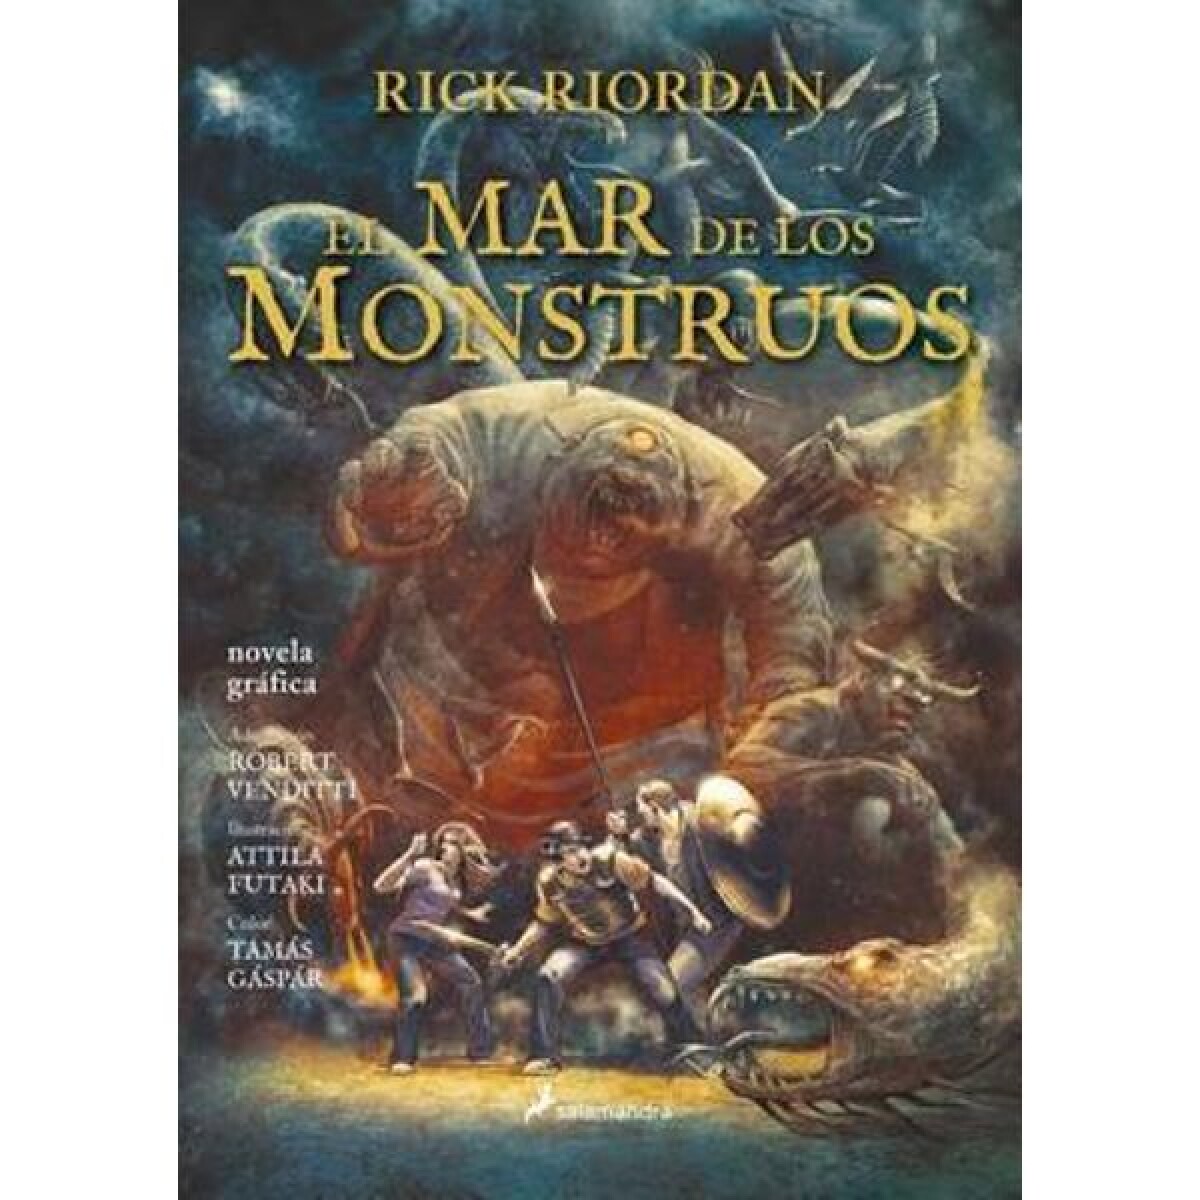 Libro el mar de los monstruos Rick Riordan - 001 